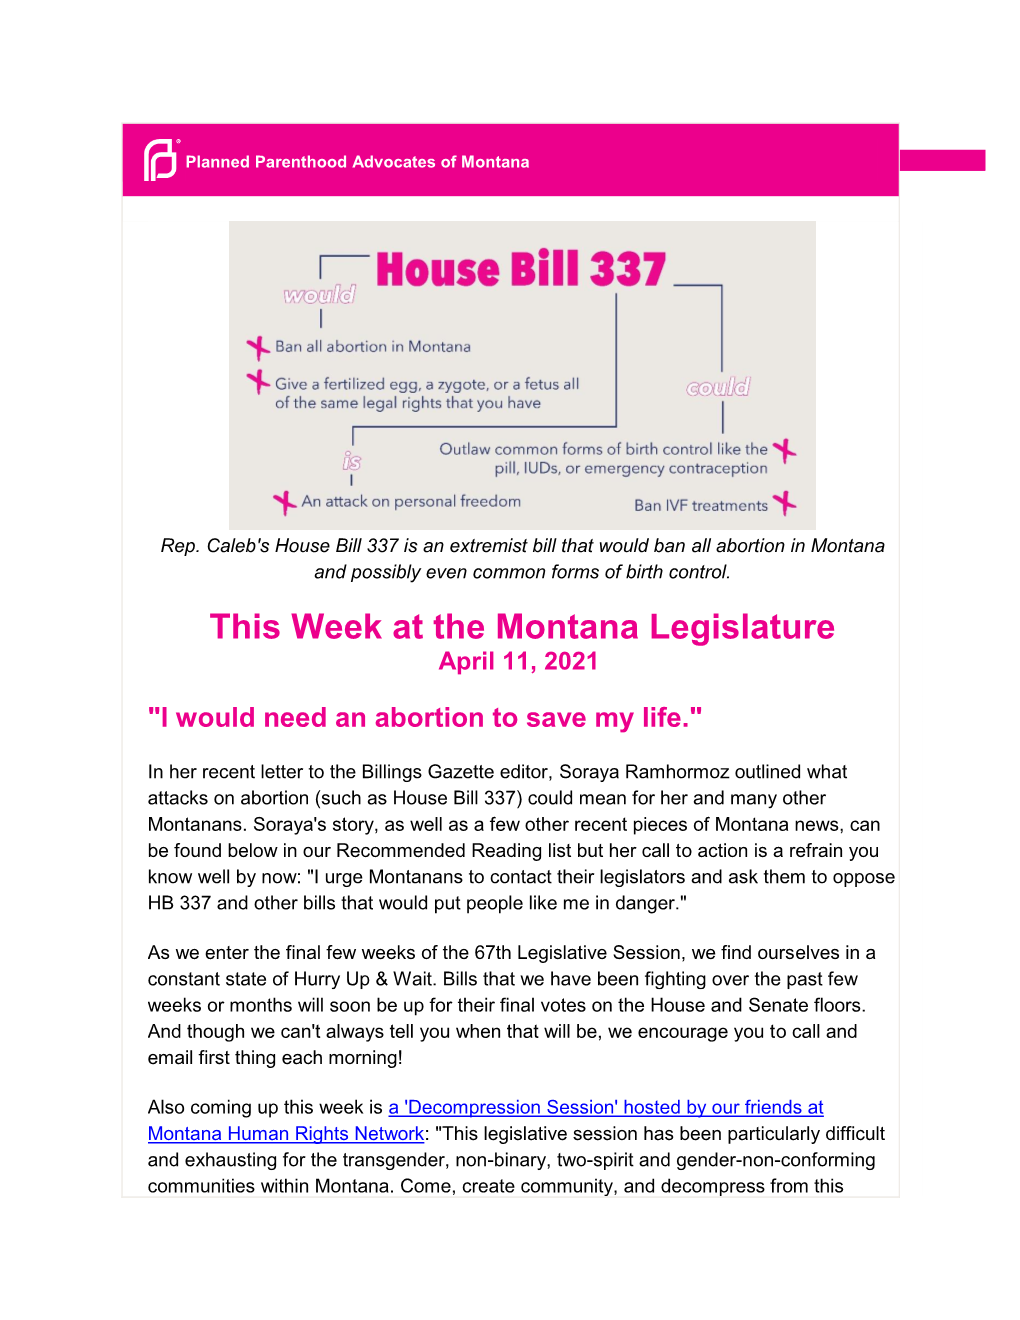 This Week at the Montana Legislature April 11, 2021